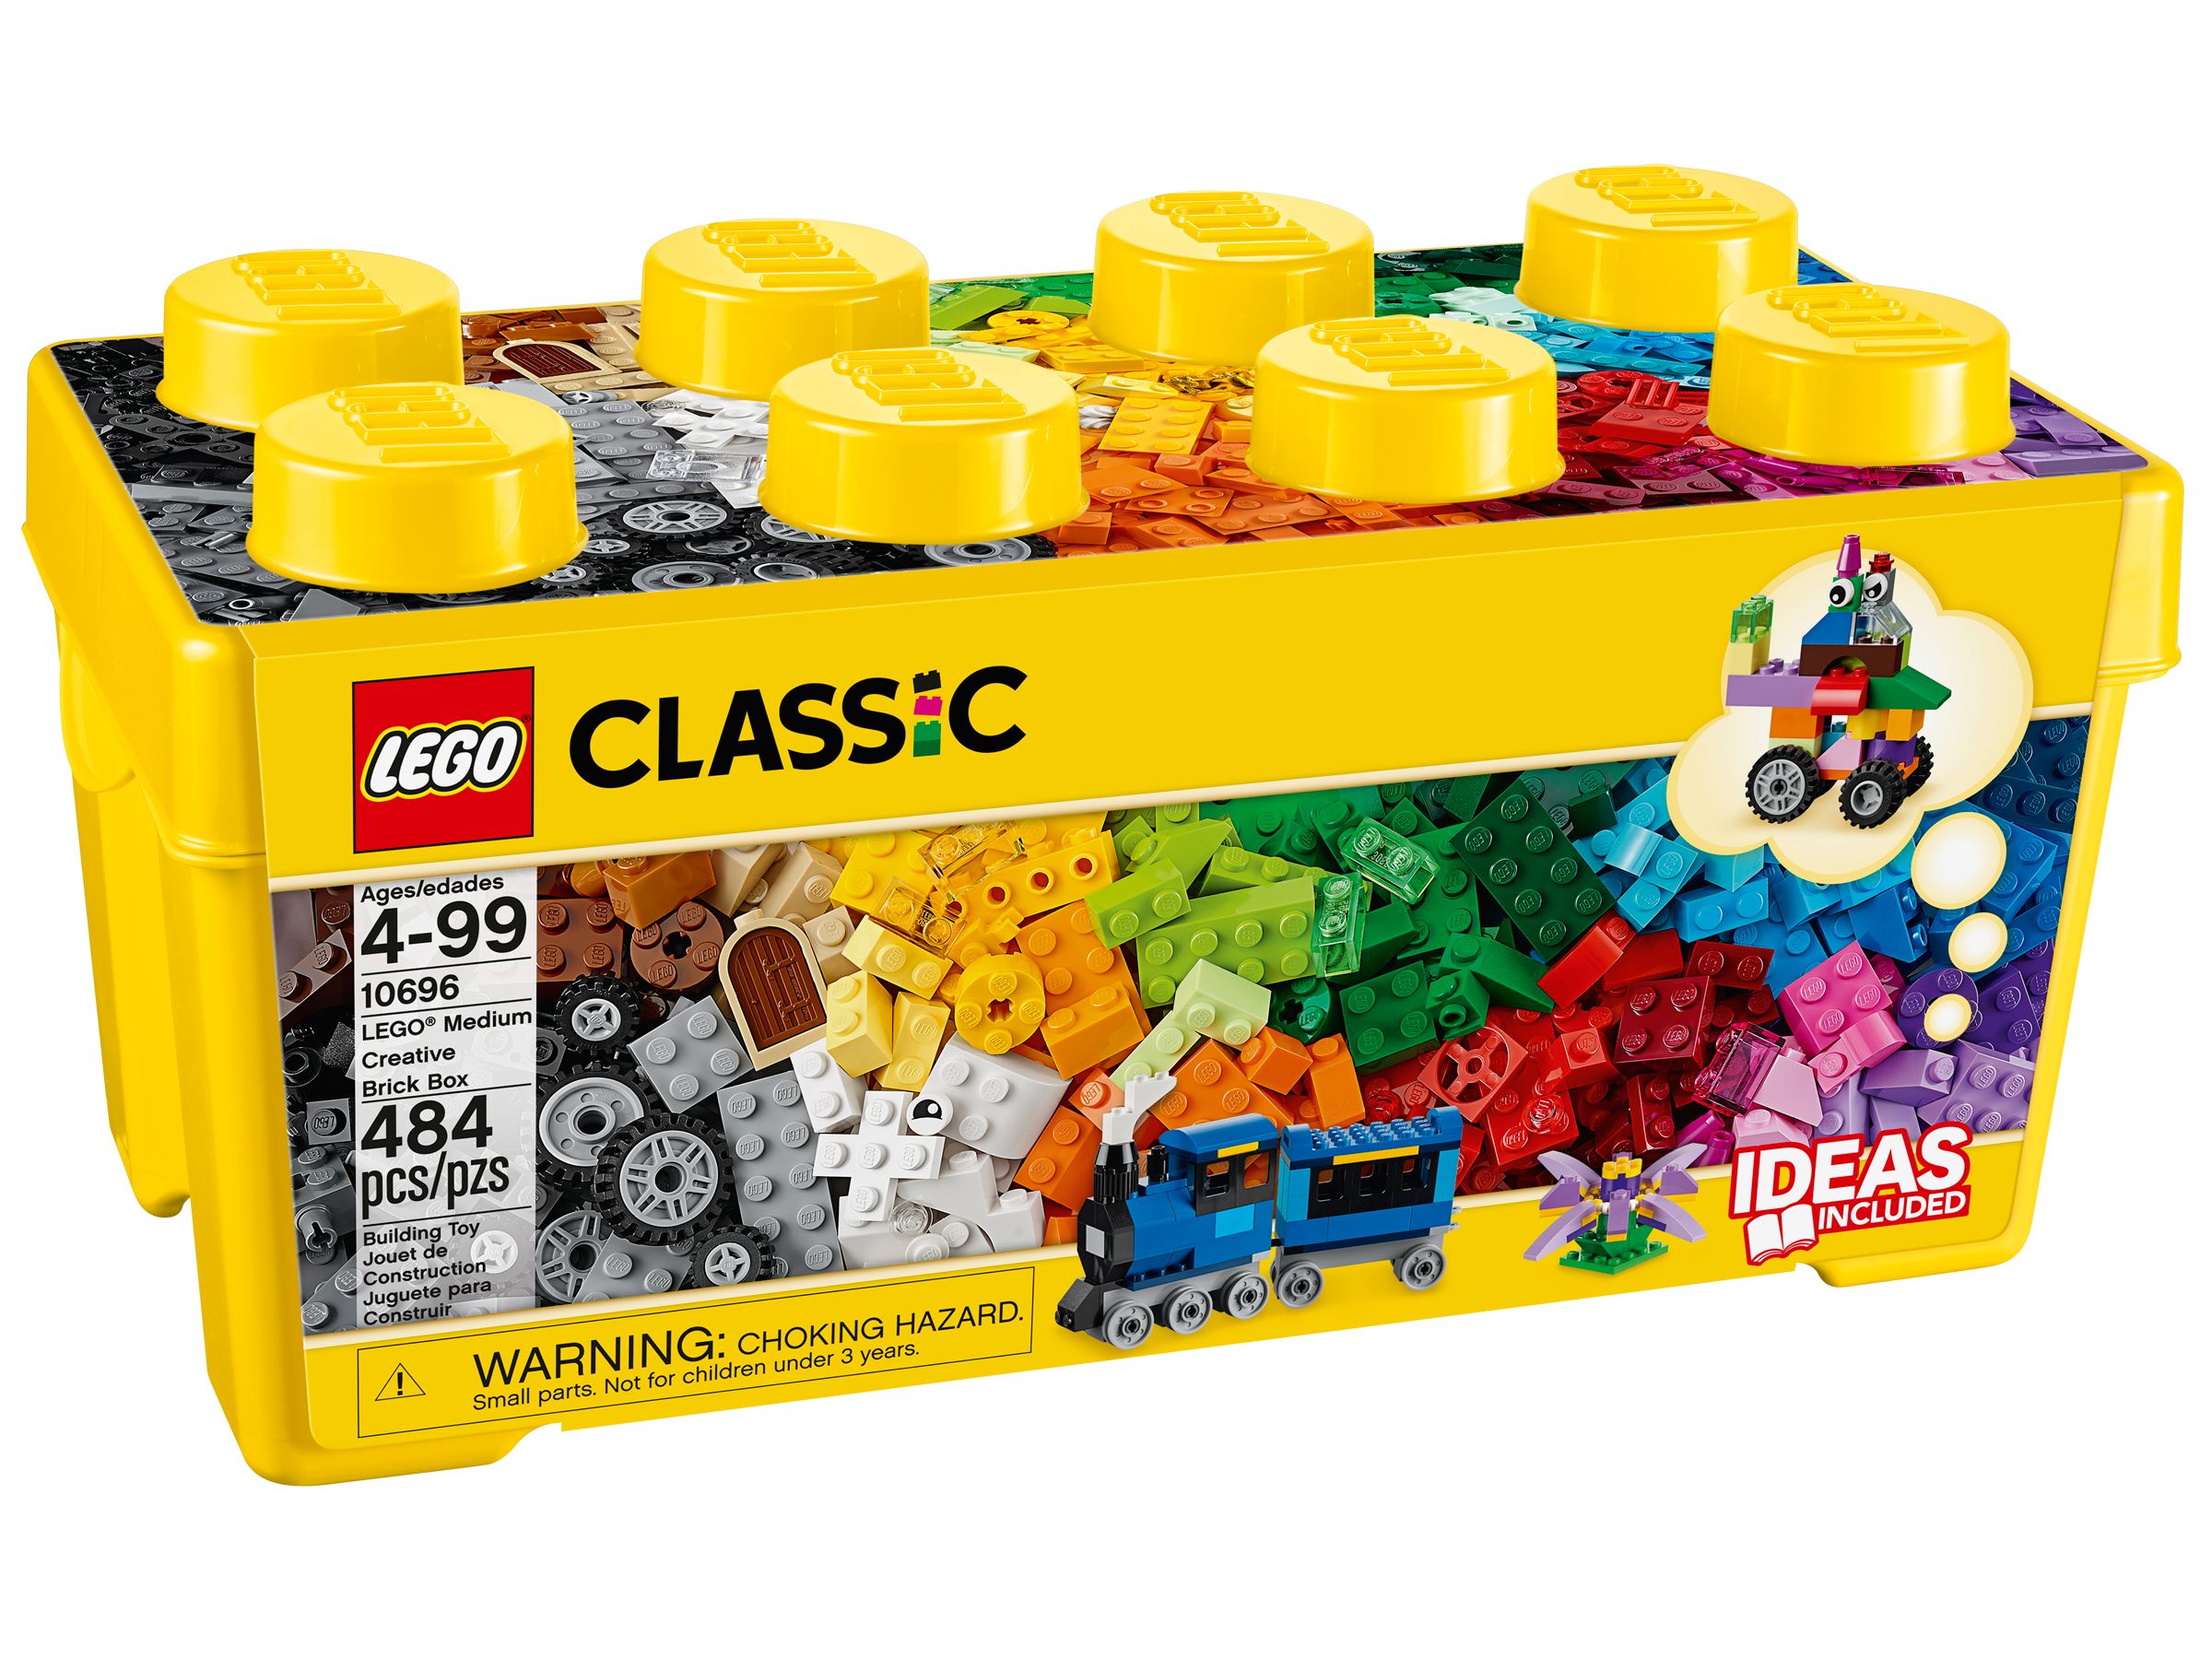 Vibrant Creative Brick Box 11038, Classic